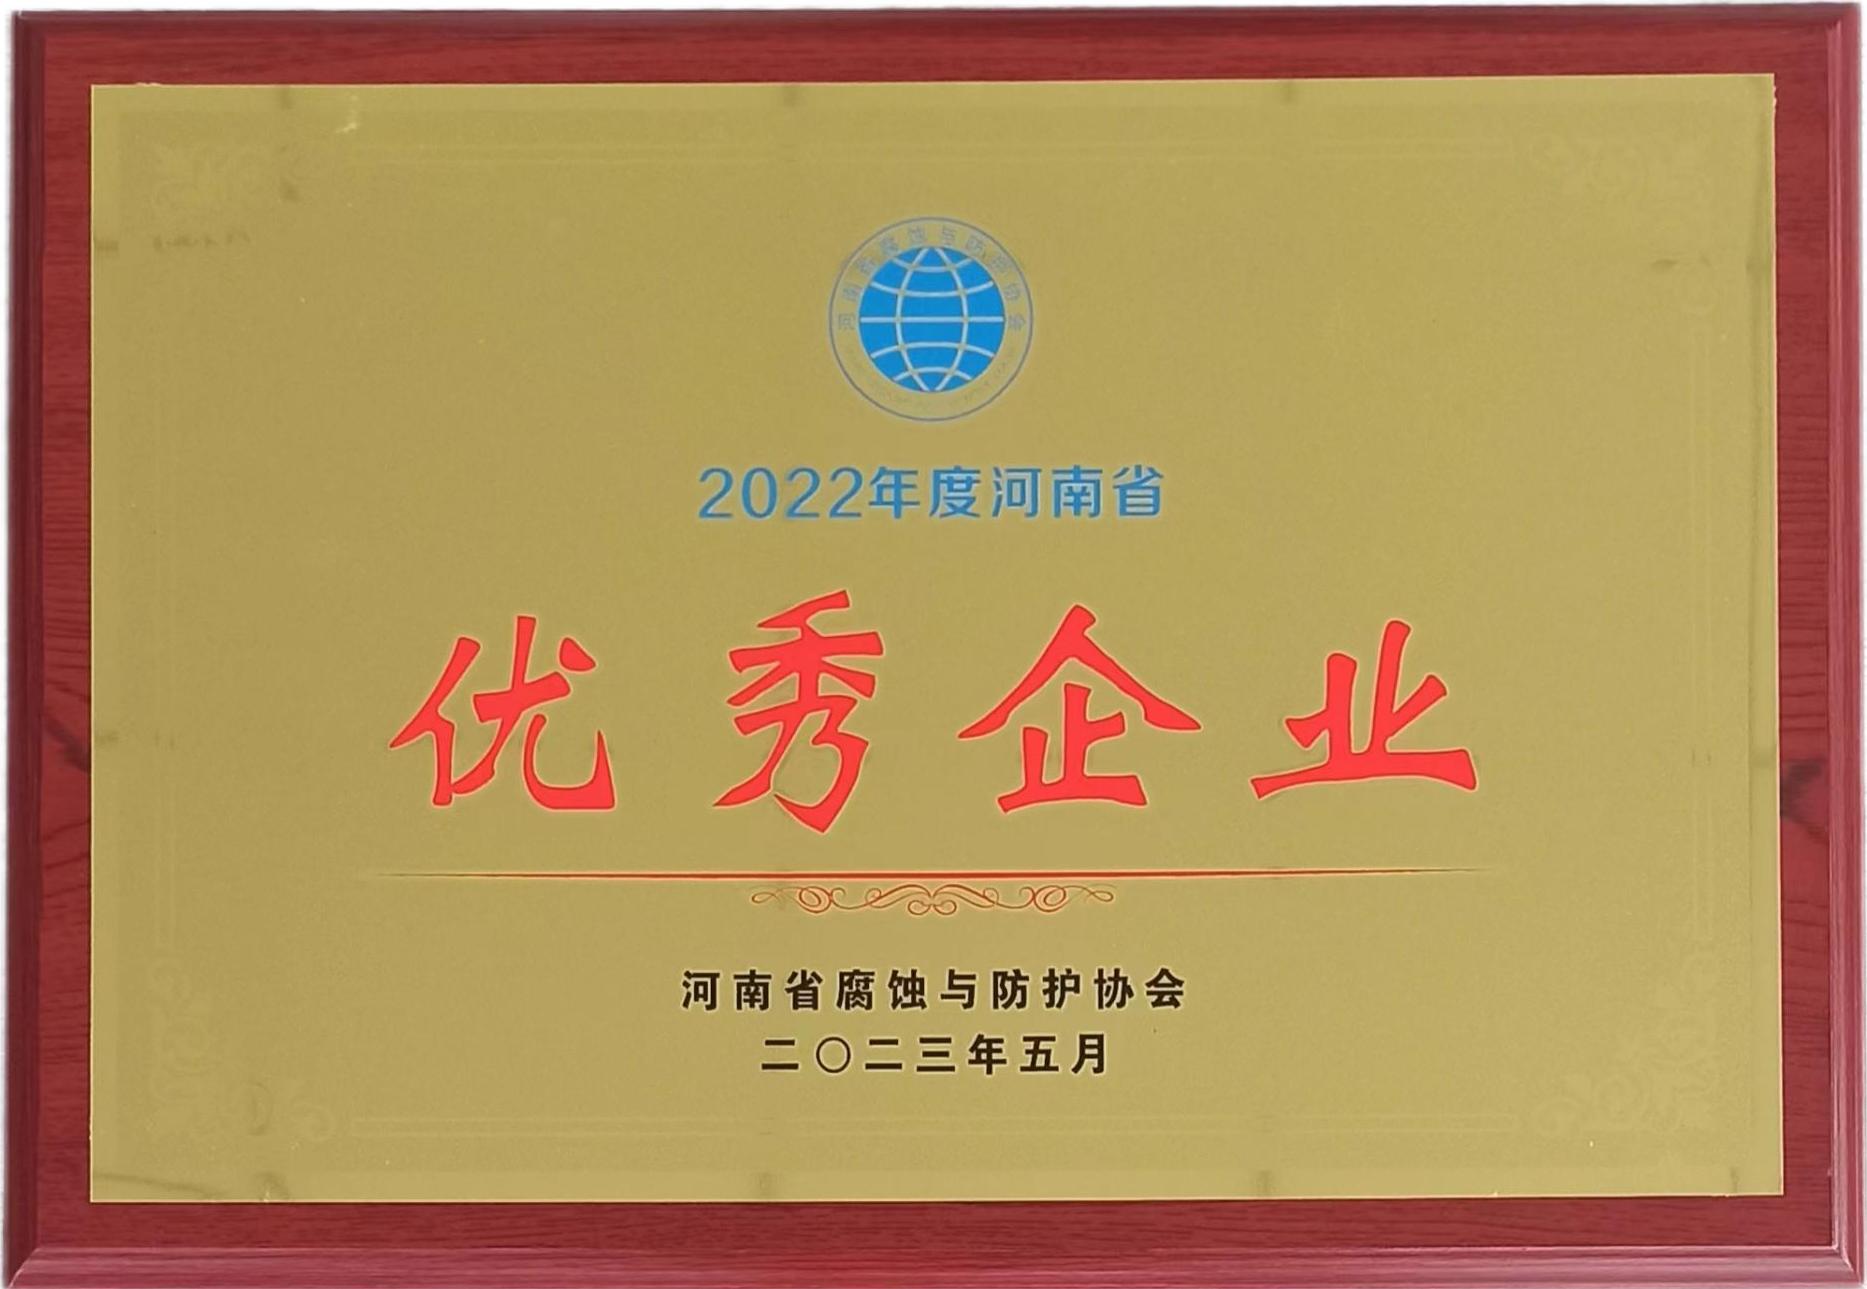 喜報再襲 II 鼎瑞德建設榮獲“2022年度河南省優秀企業、科技創新企業等多項榮譽！